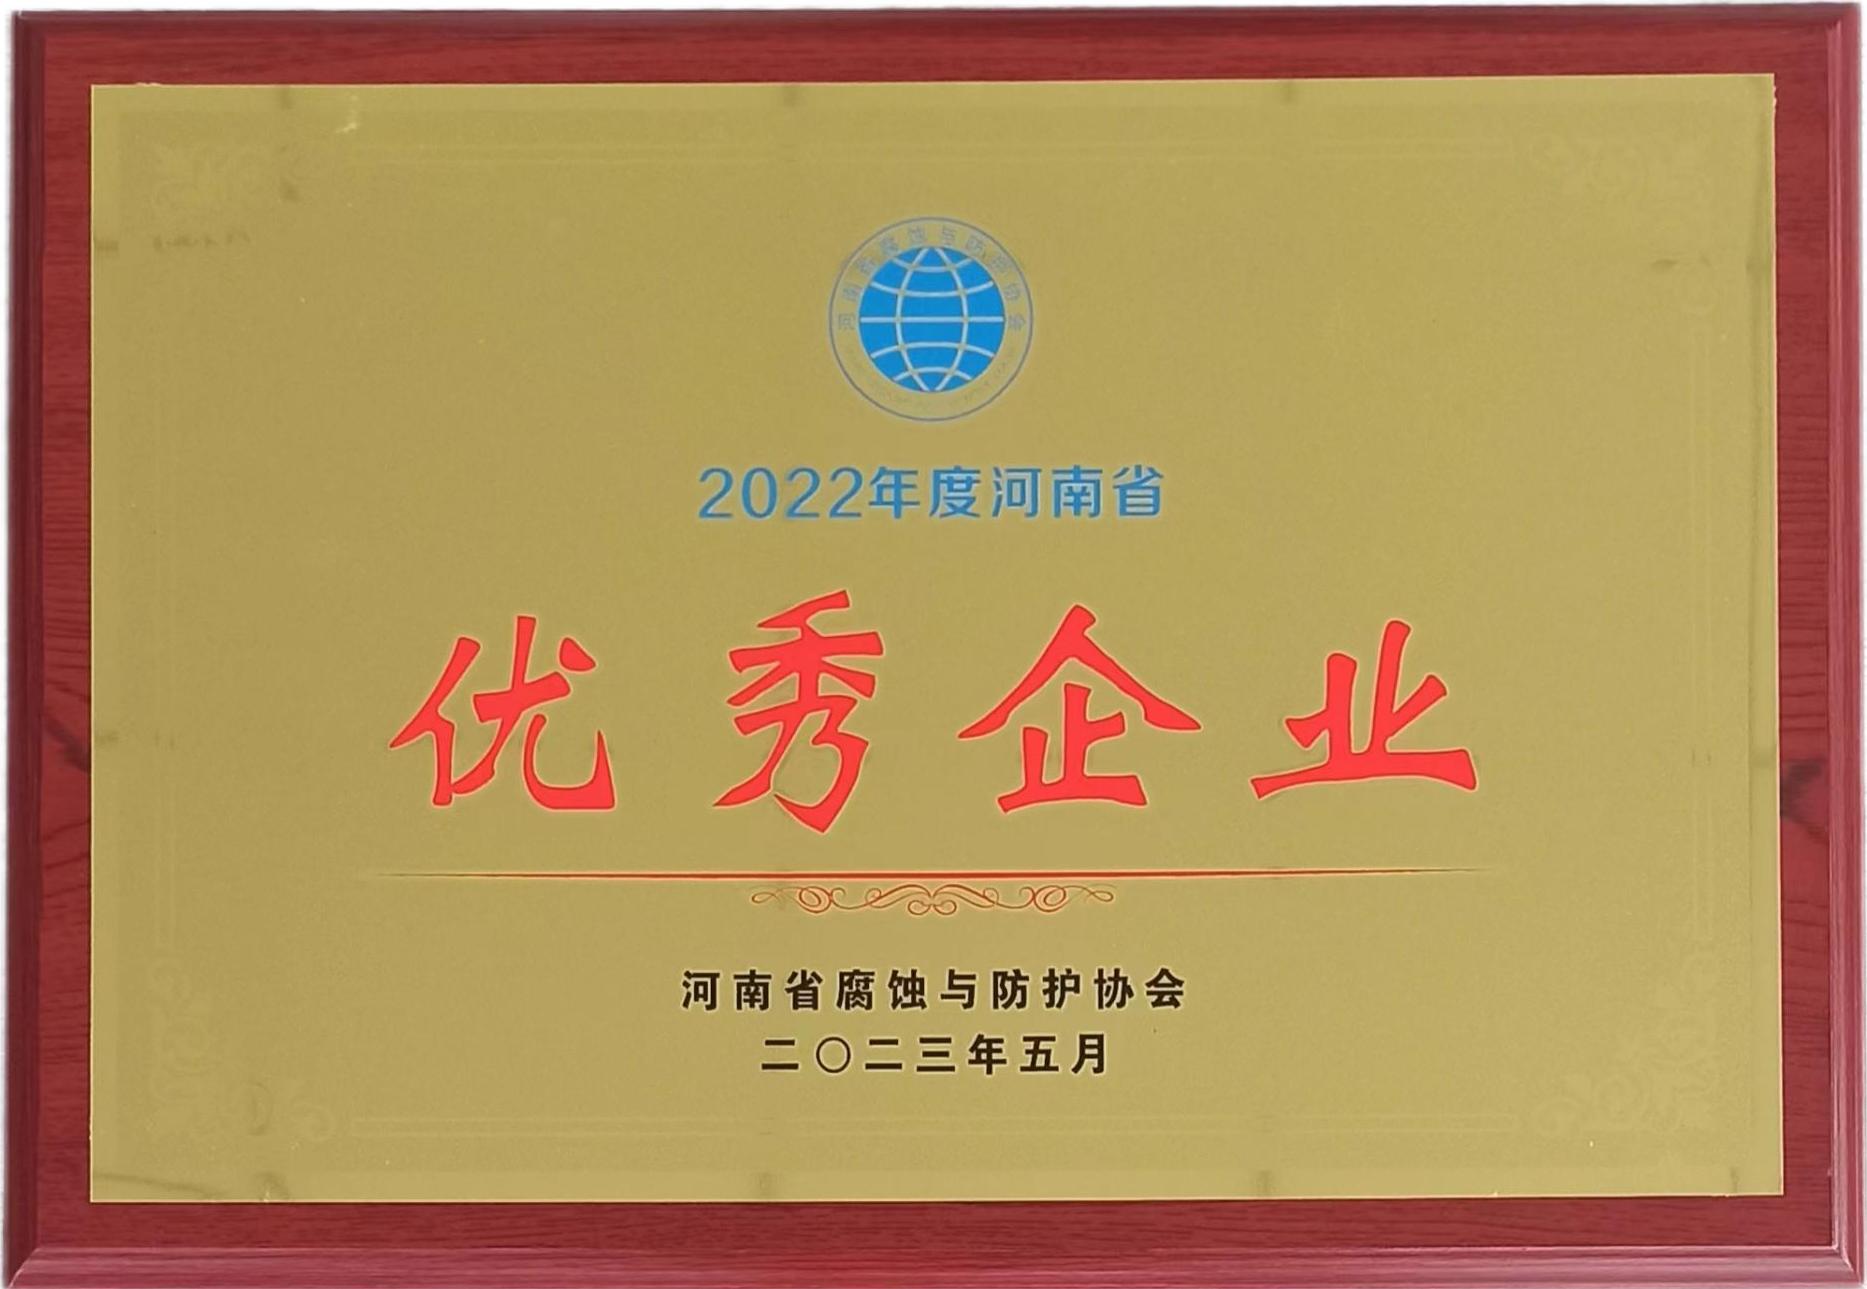 喜報再襲 II 鼎瑞德建設榮獲“2022年度河南省優秀企業、科技創新企業等多項榮譽！